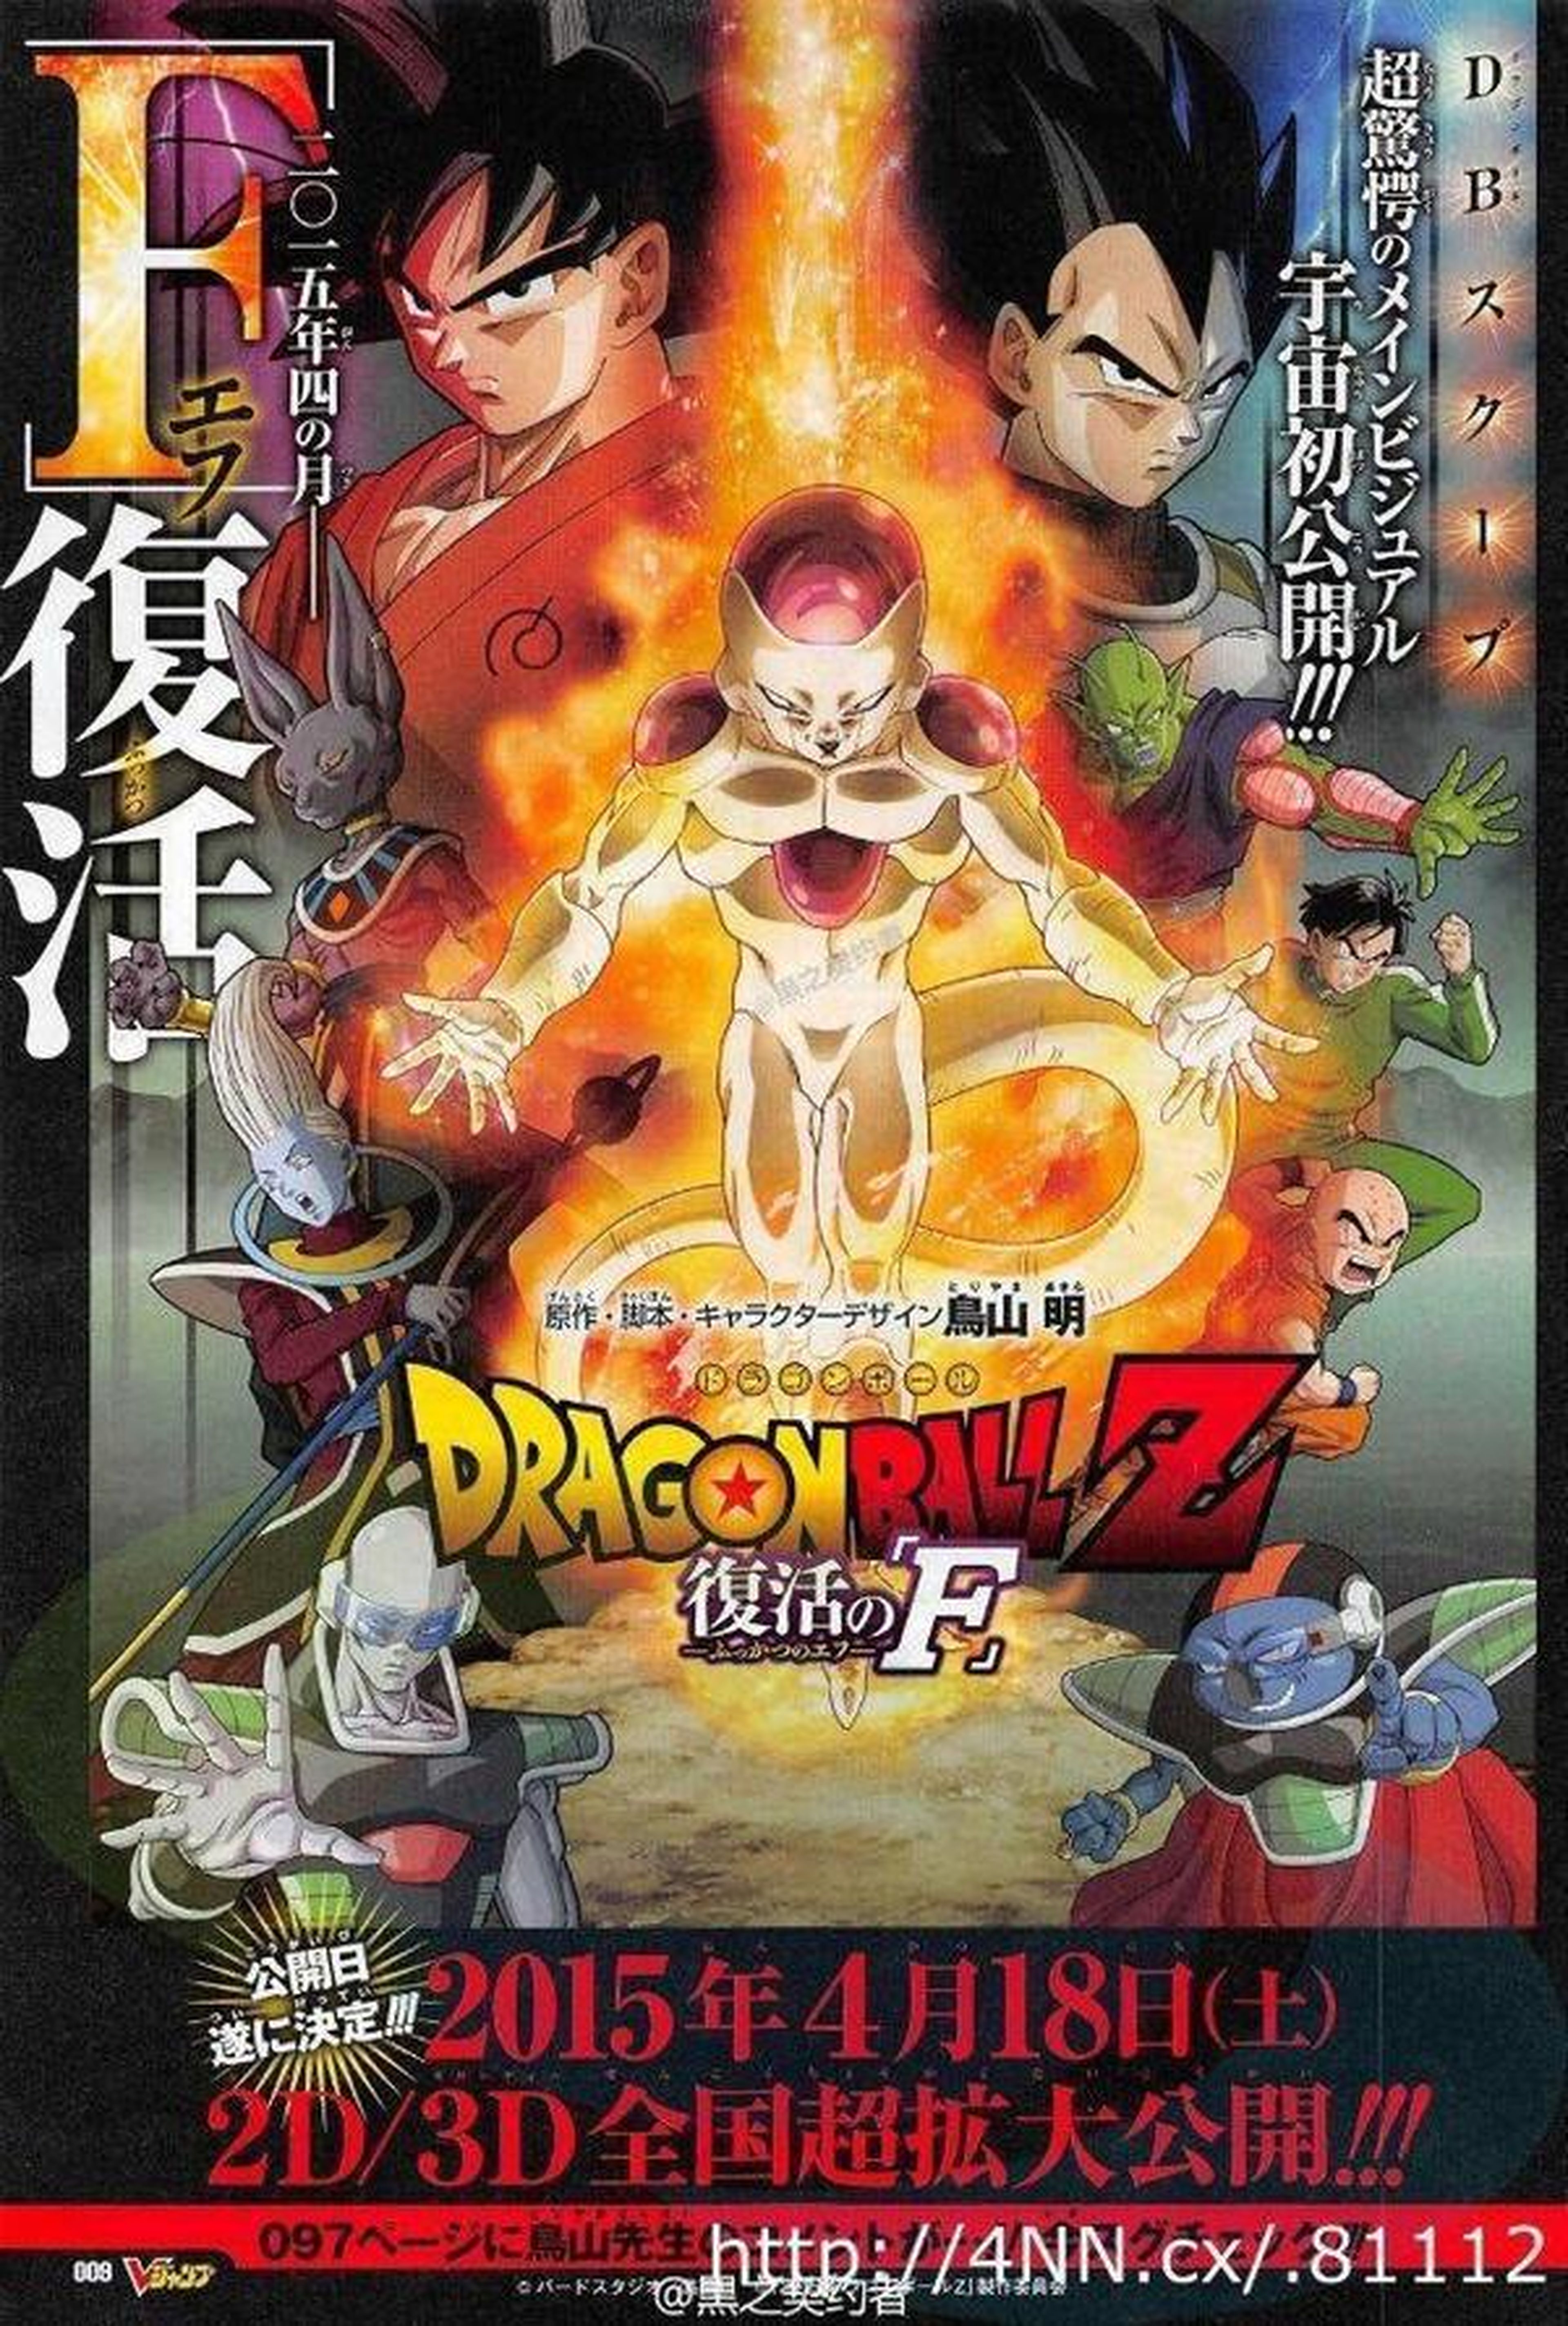 Dragon Ball Z: Fukkatsu no F. ¡Imágenes y detalles del nuevo film de Dragon Ball Z!